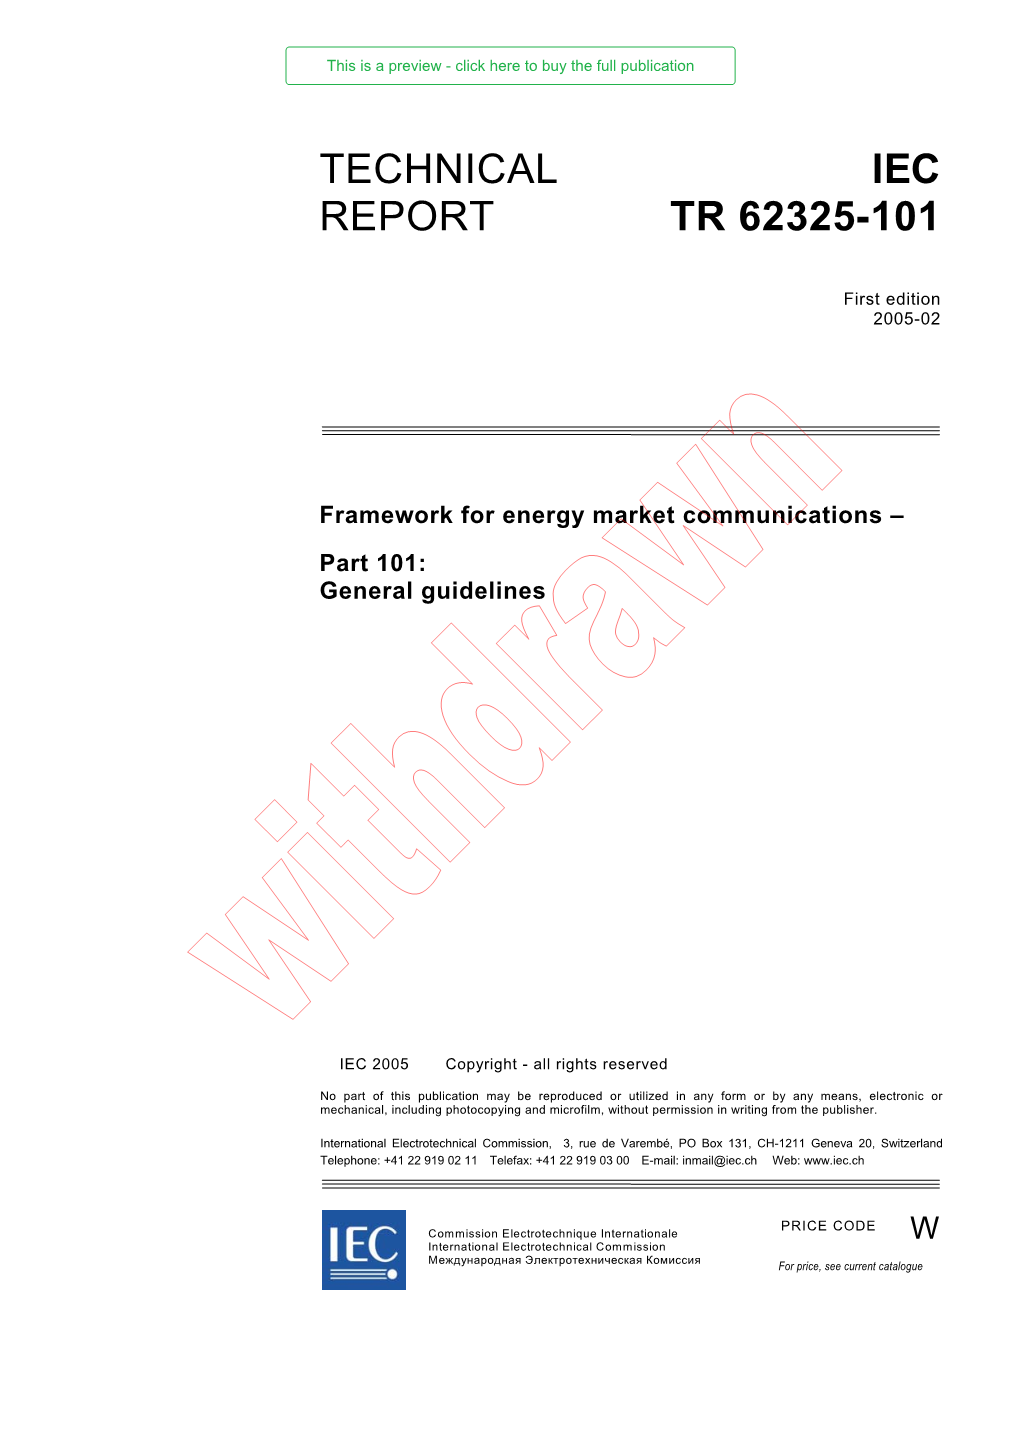 Technical Report Iec Tr 62325-101